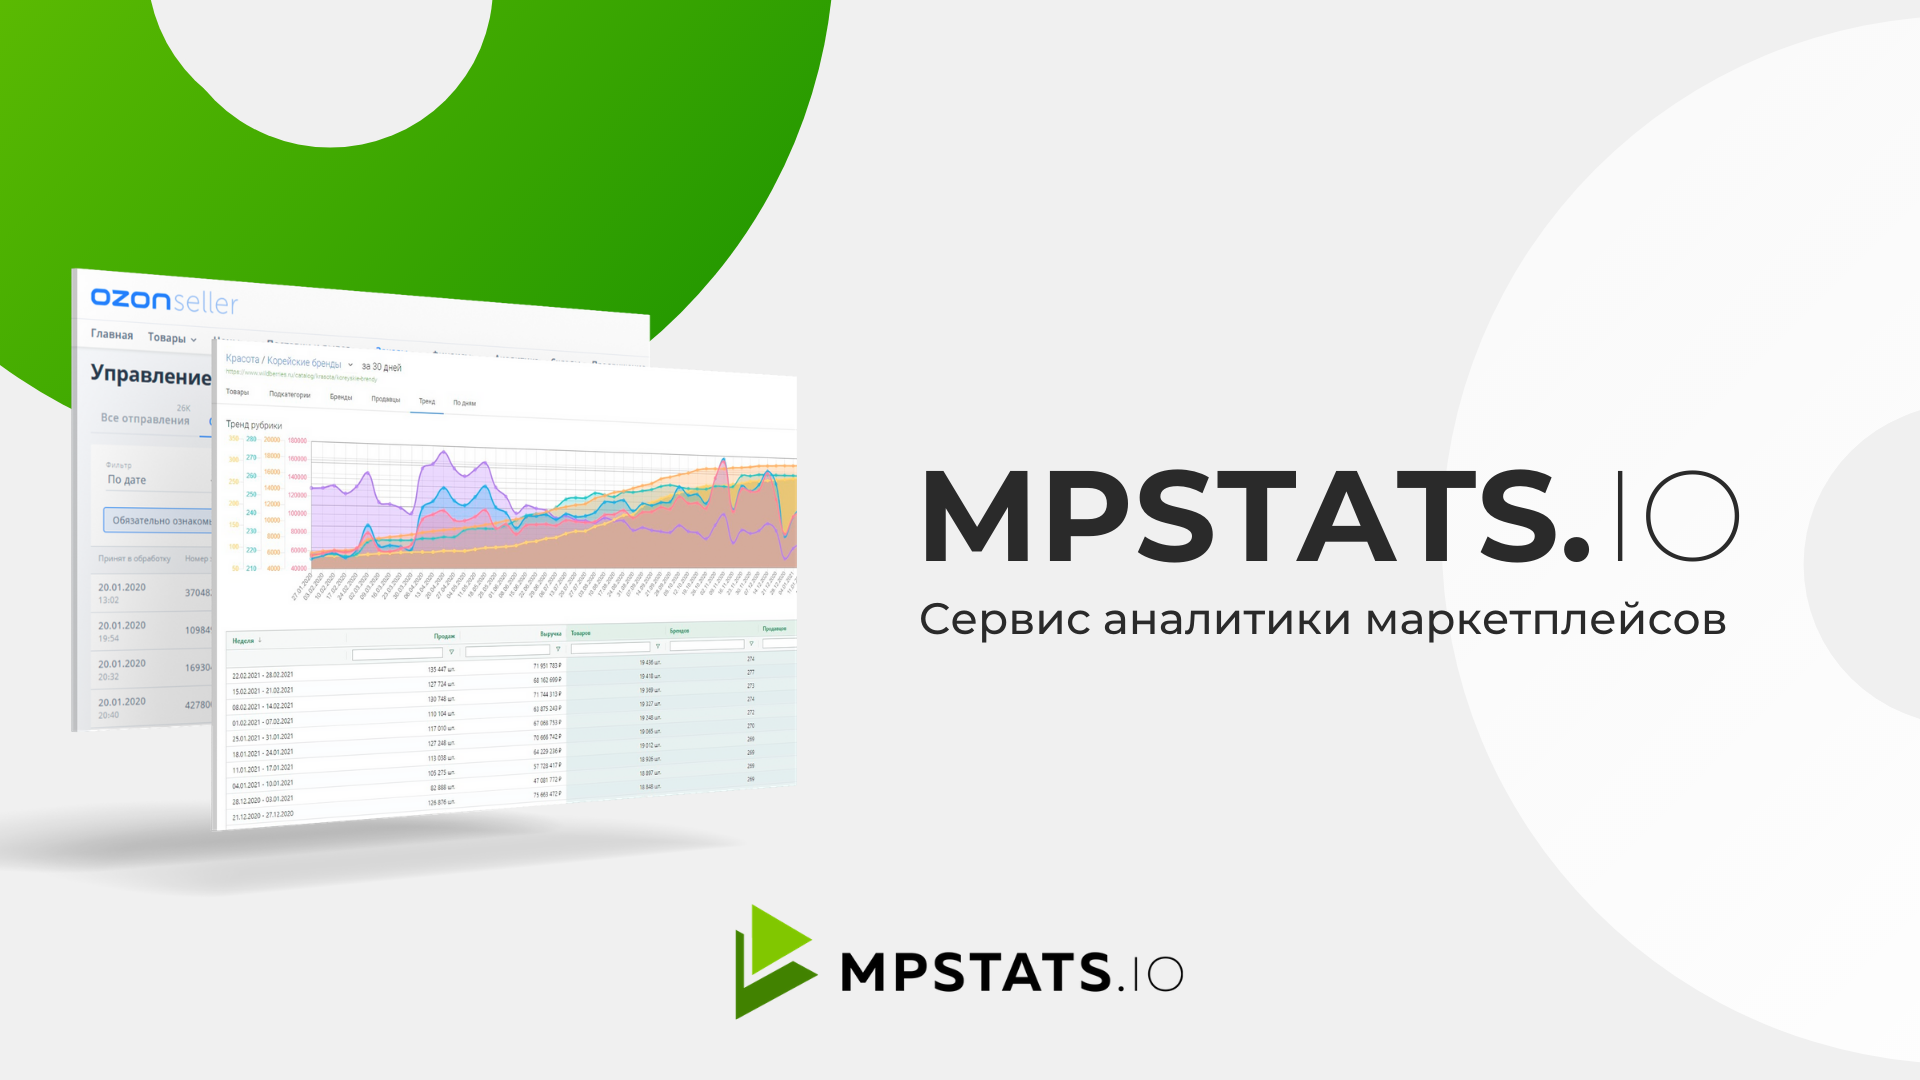 Аналитика маркетплейсов бесплатная программа. Mpstats - сервис аналитики маркетплейсов. Аналитика MP stats. Сервисы аналитики. Mpstats логотип.